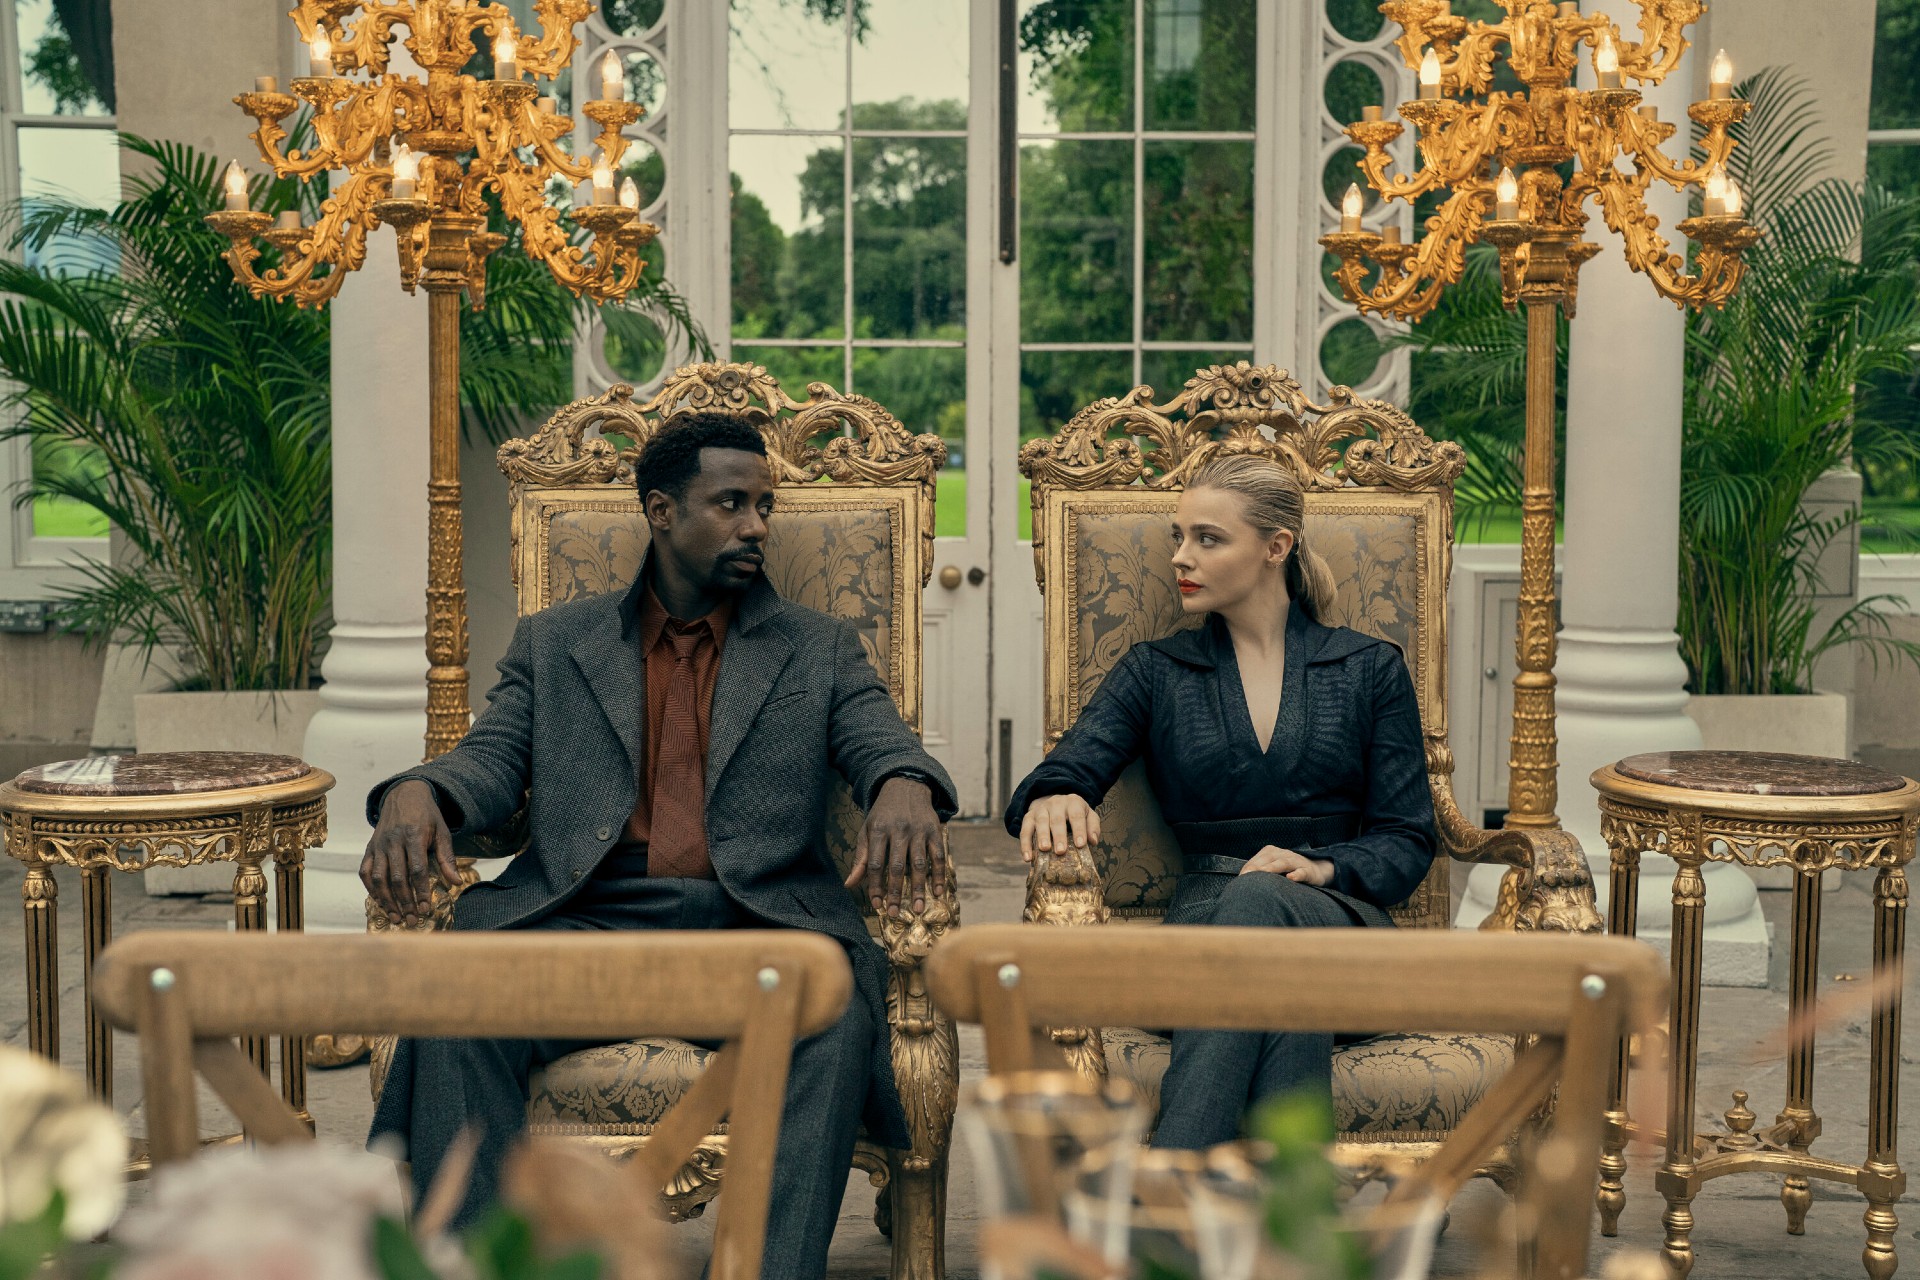 Gary Carr e Chloe Grace Moretz se encaram enquanto estão sentados em uma cena de The Peripheral.